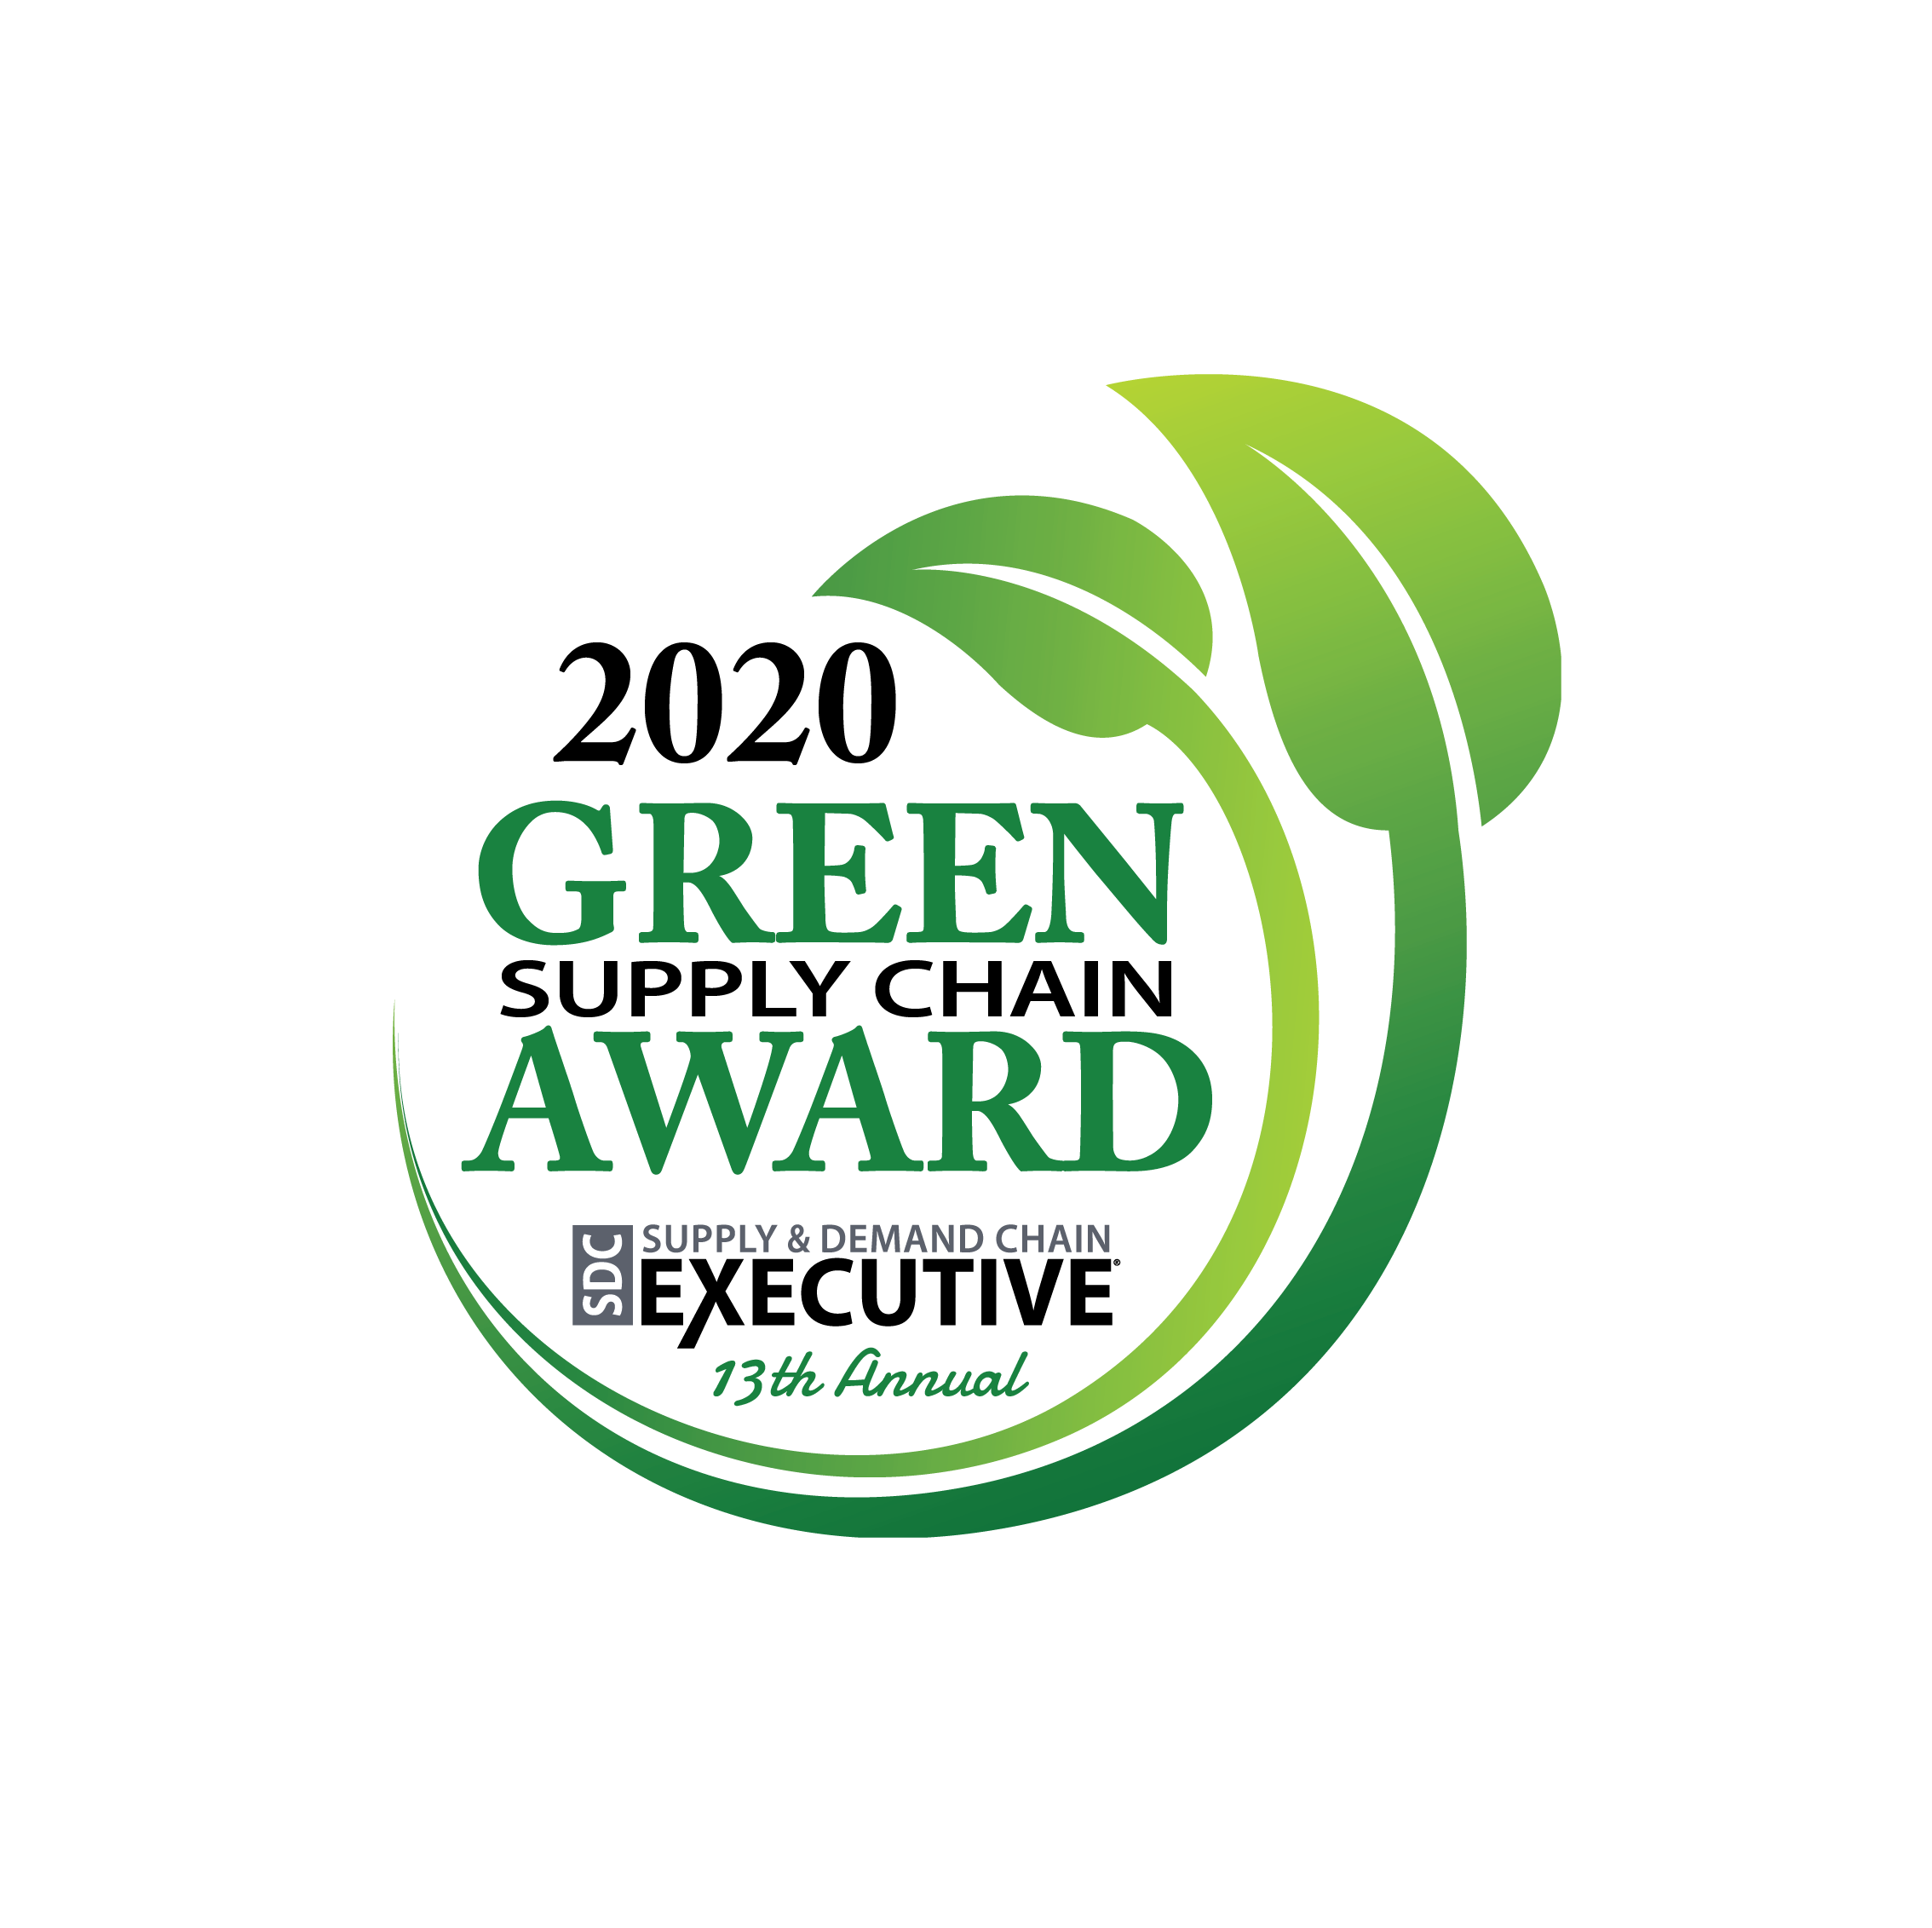 Green Supply Chain Award 2020